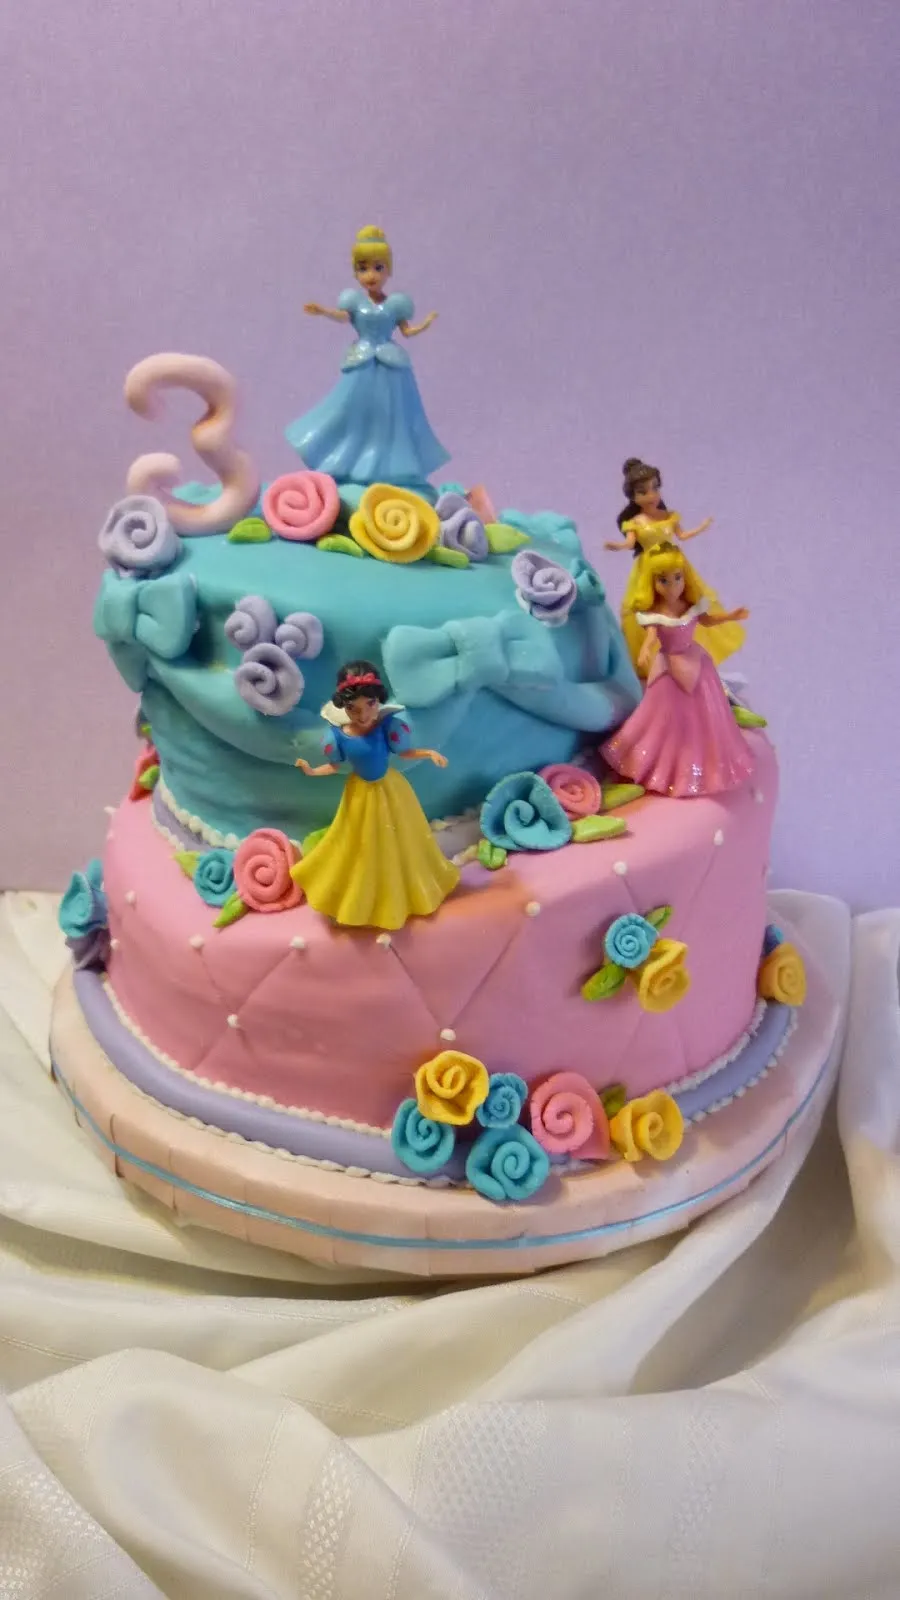 tortas artesanales arafran: tortas de cumpleaños infantiles.